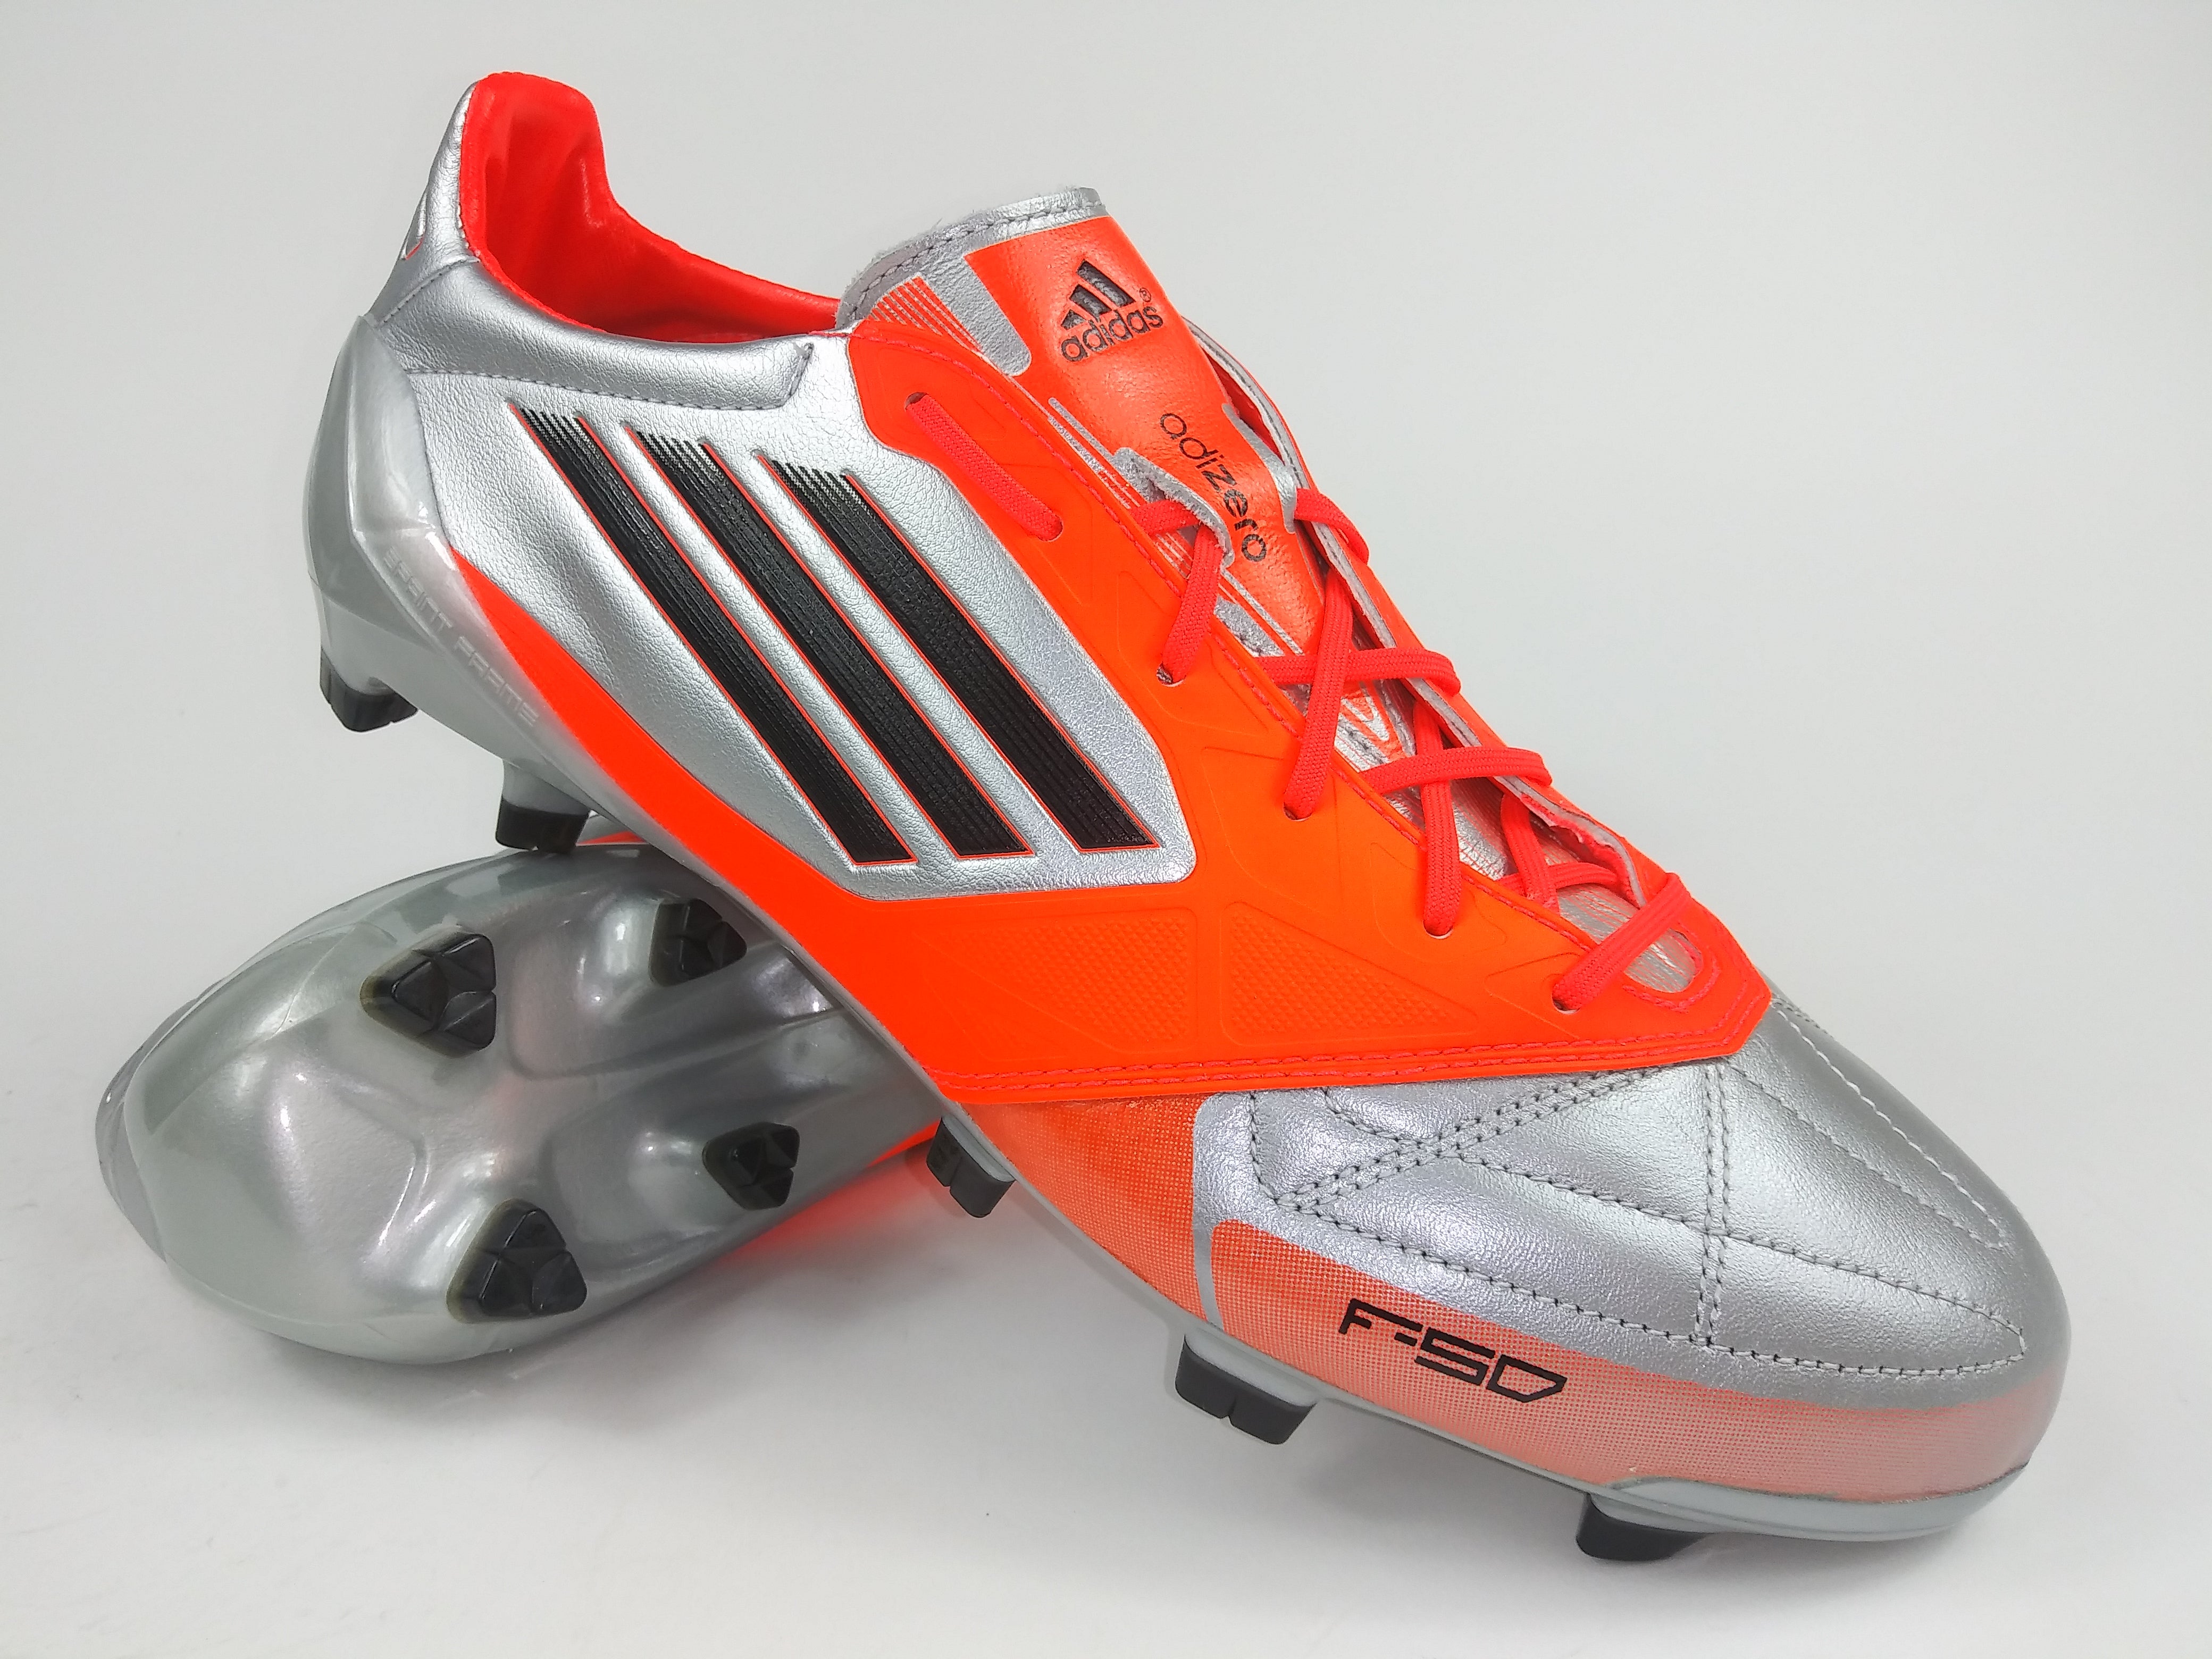 Adidas F50 Adizero Trx Fg Leather Silver Orange Villegas Footwear